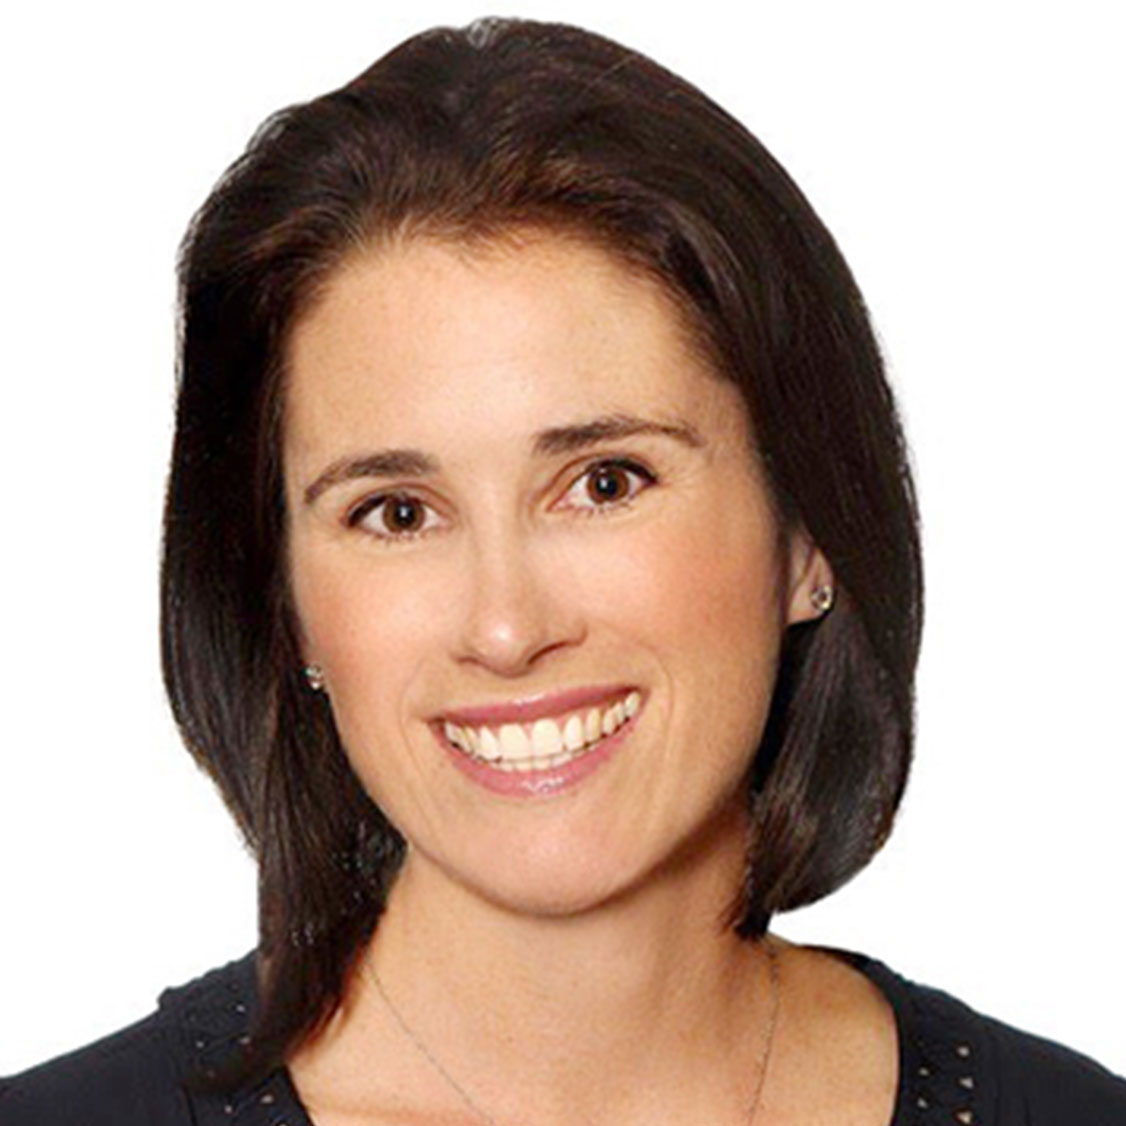 Meet Sara Austin, Founder & CEO of Children First Canada. – Women